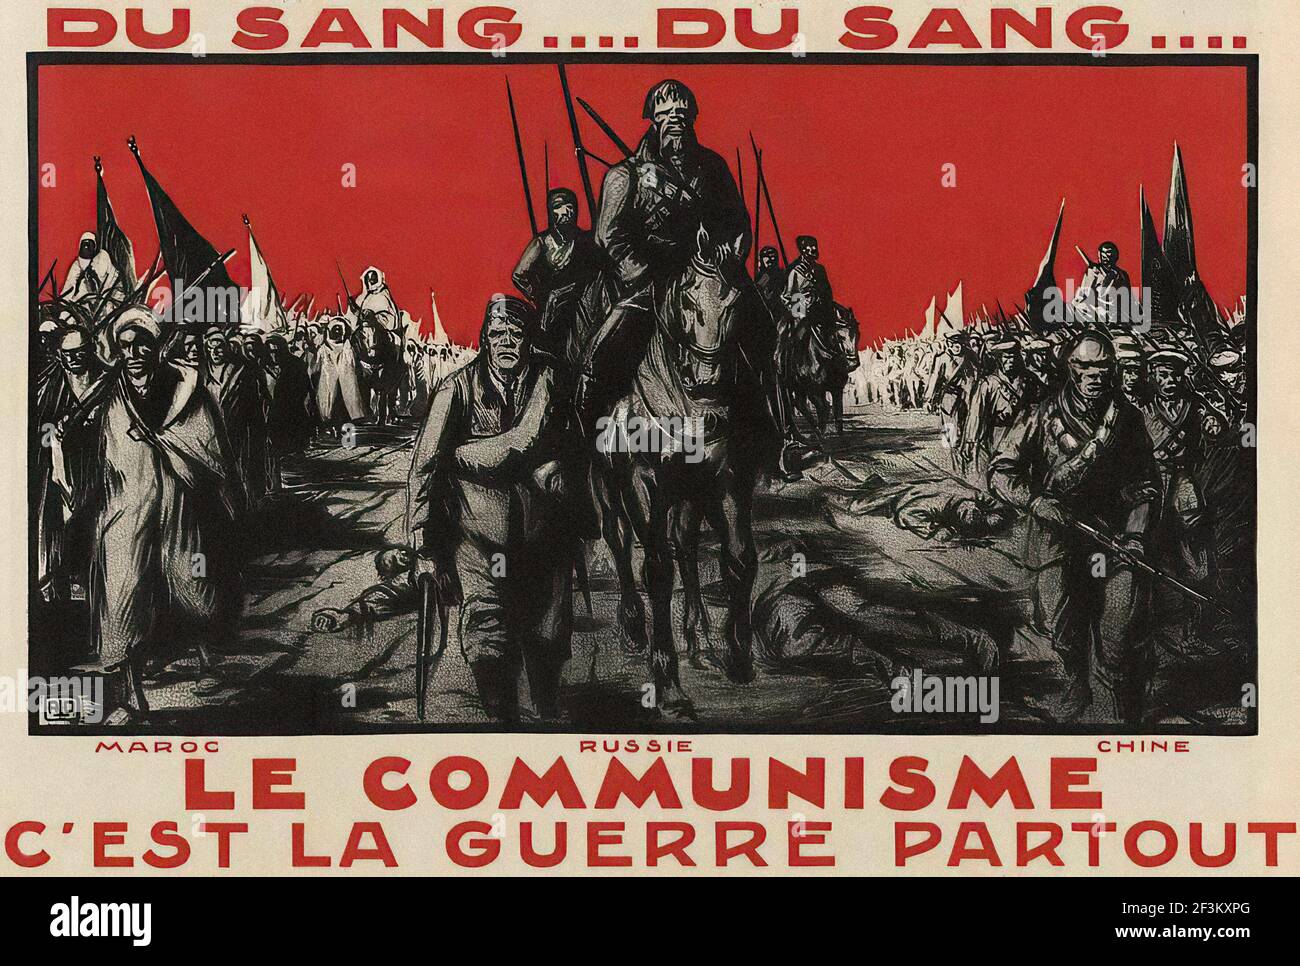 Affiche de propagande anti-communiste française. Une mer de sang ... Là où le communisme commence à dominer, des guerres sans pitié sont toujours menées - Maroc, Russie, Chi Banque D'Images